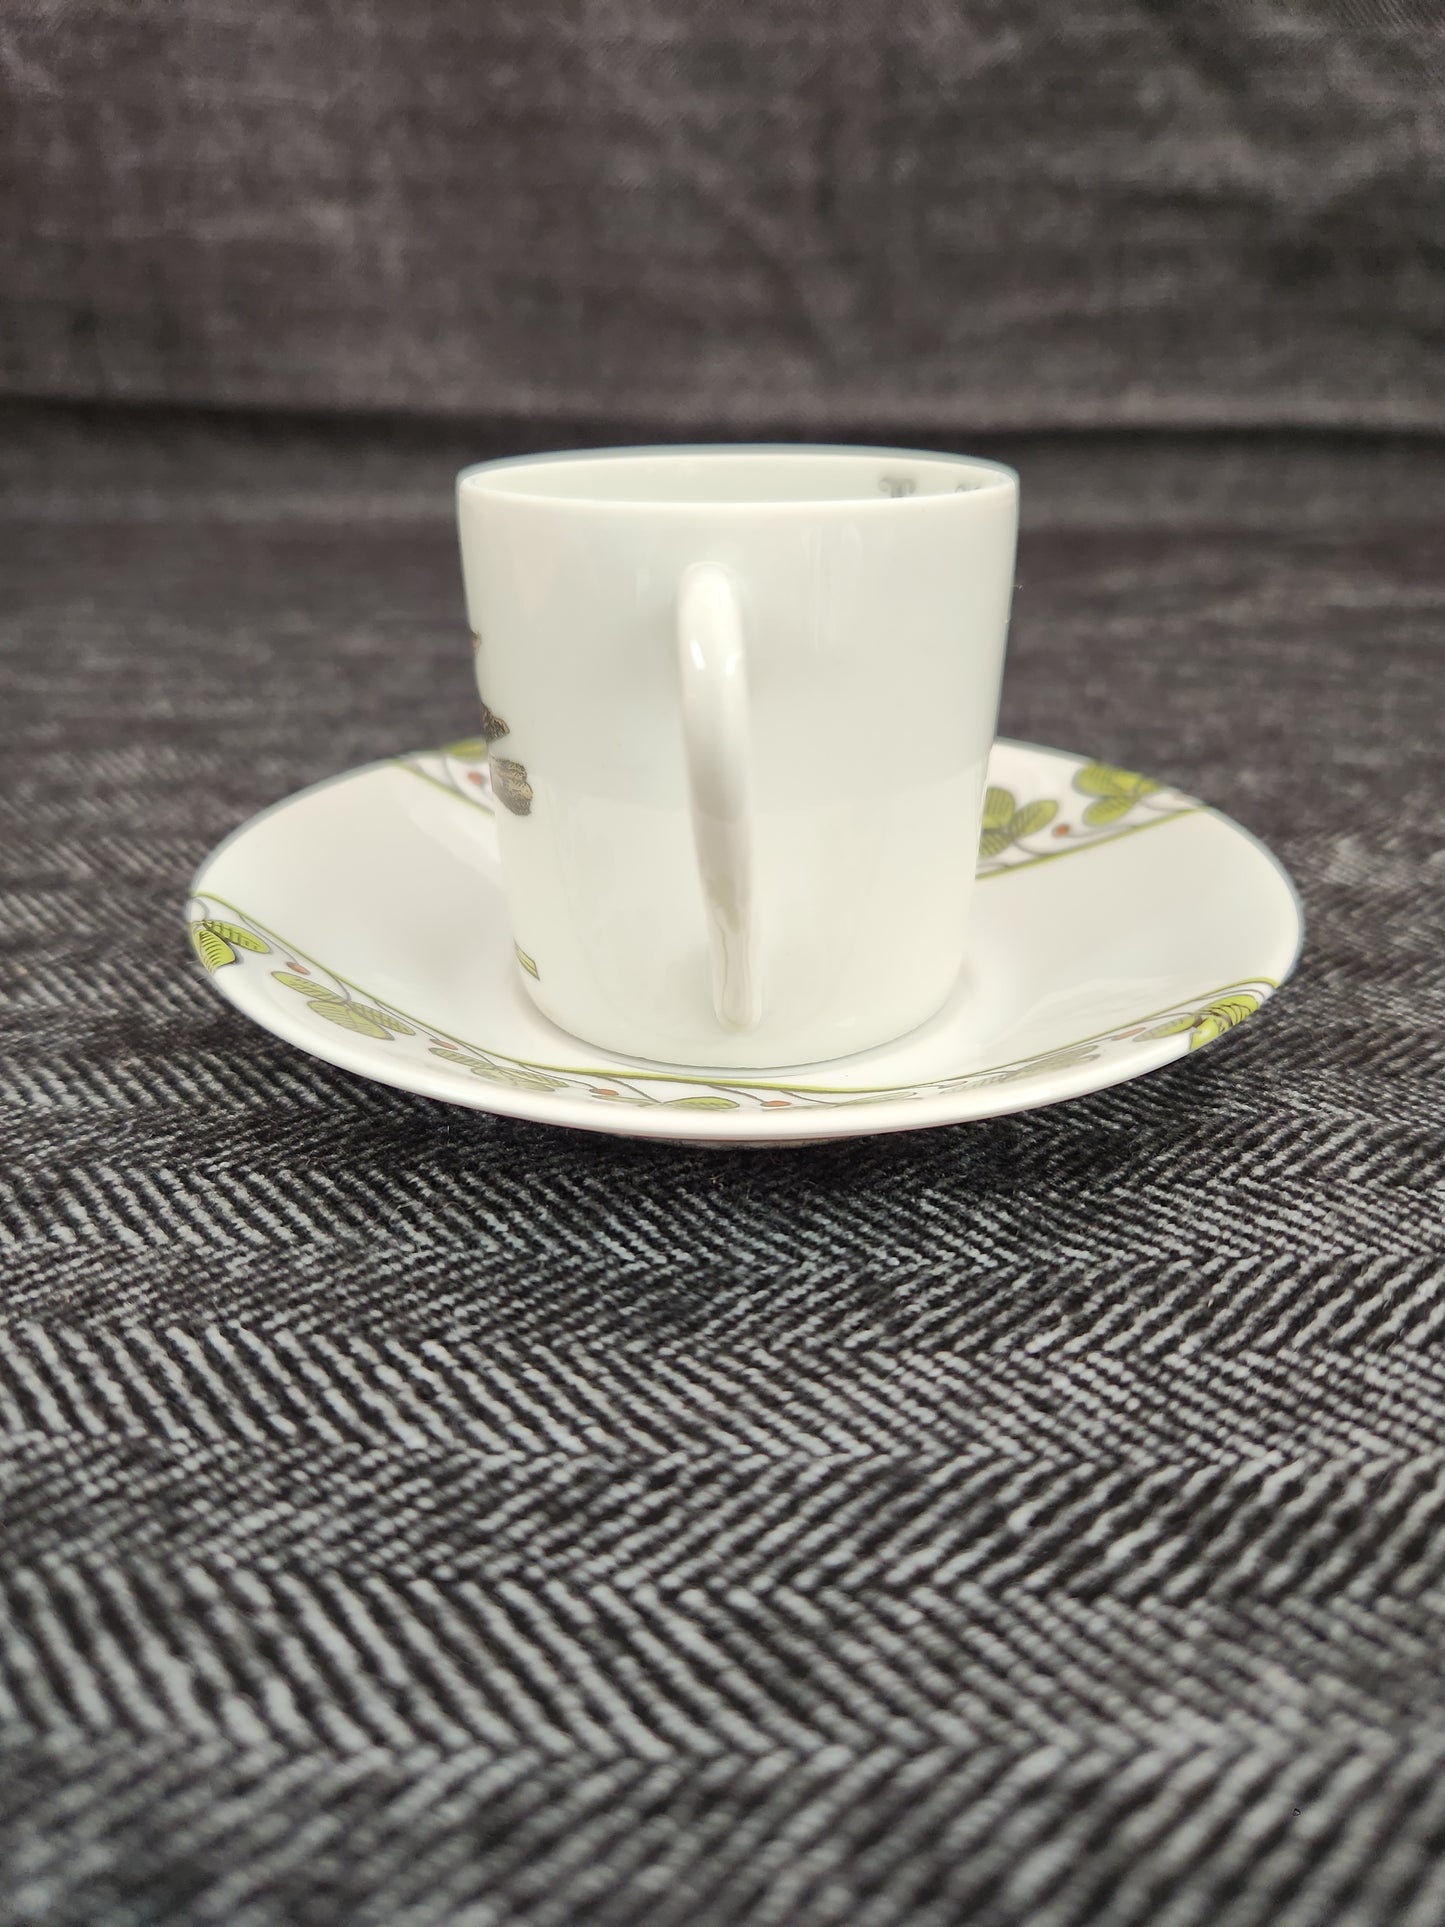 Porcelaine D'Auteuil Chambord 2" Flat Demitasse Cup & Saucer